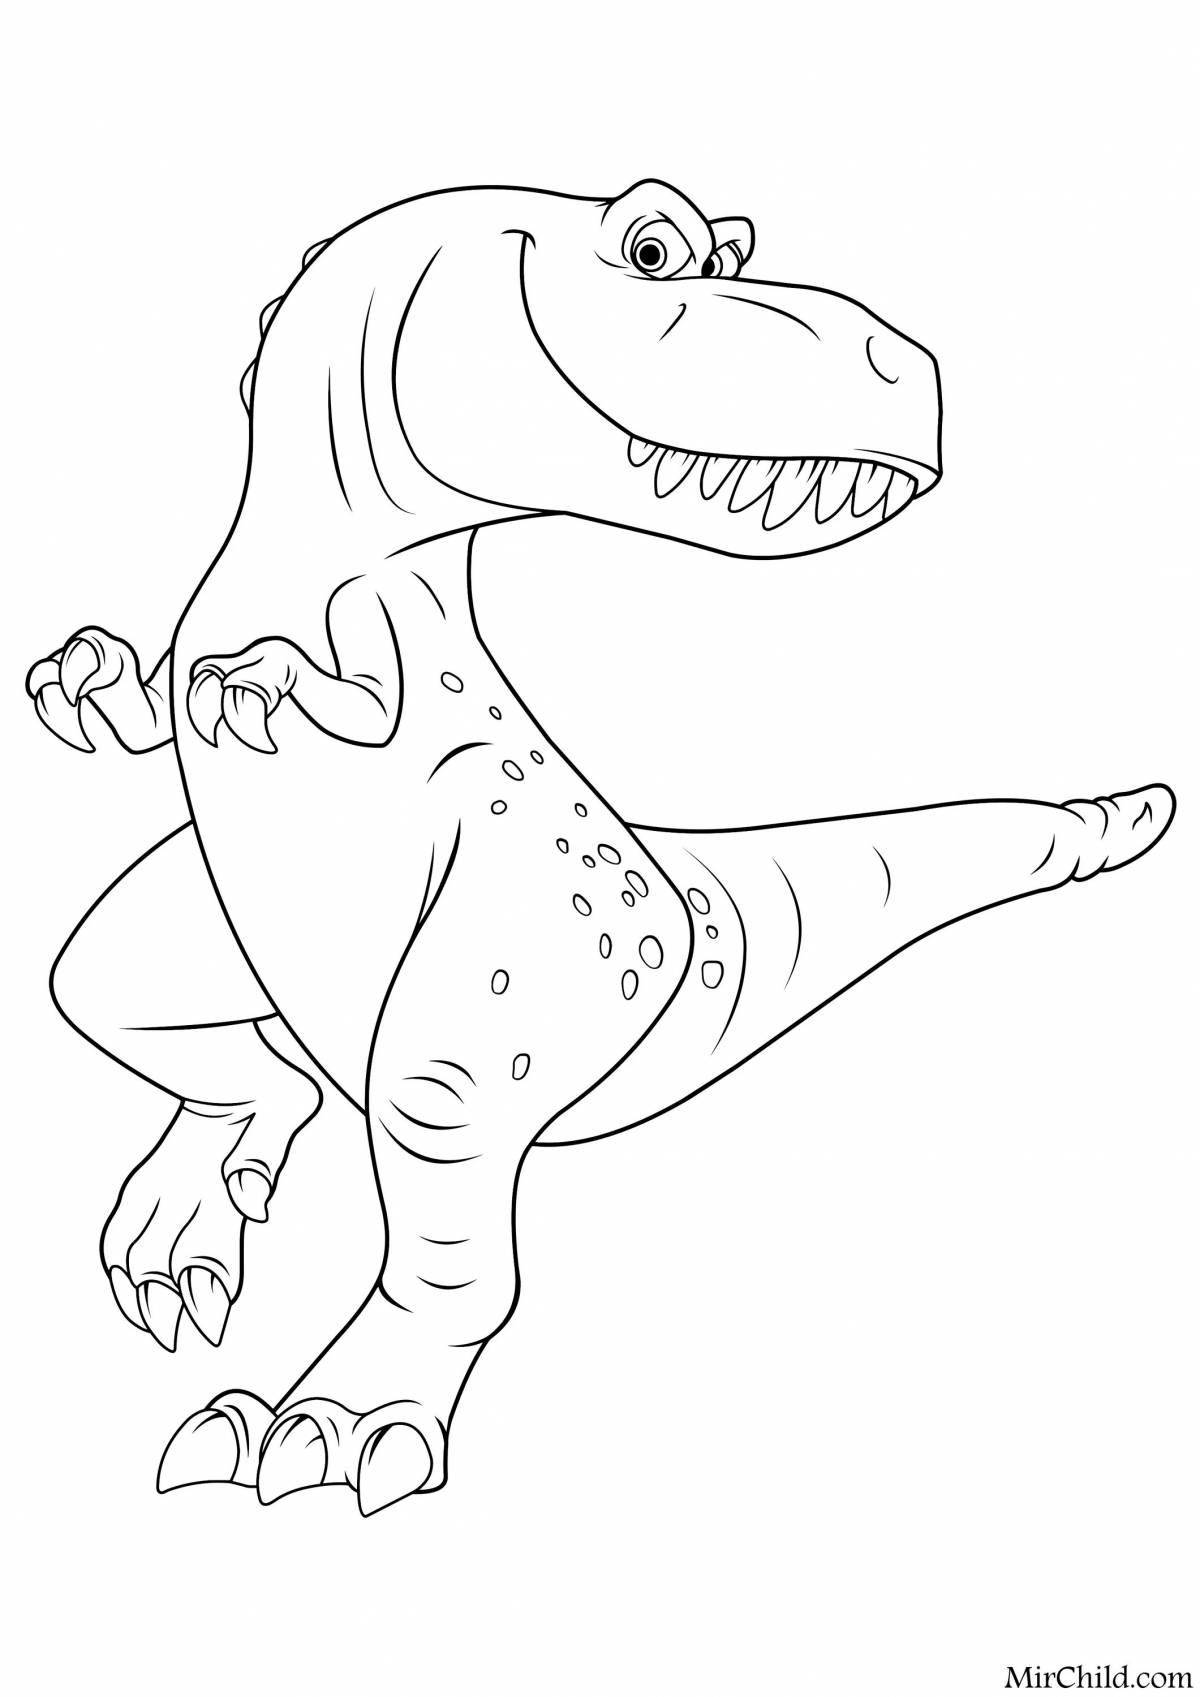 Funny cartoon tarbosaurus coloring book